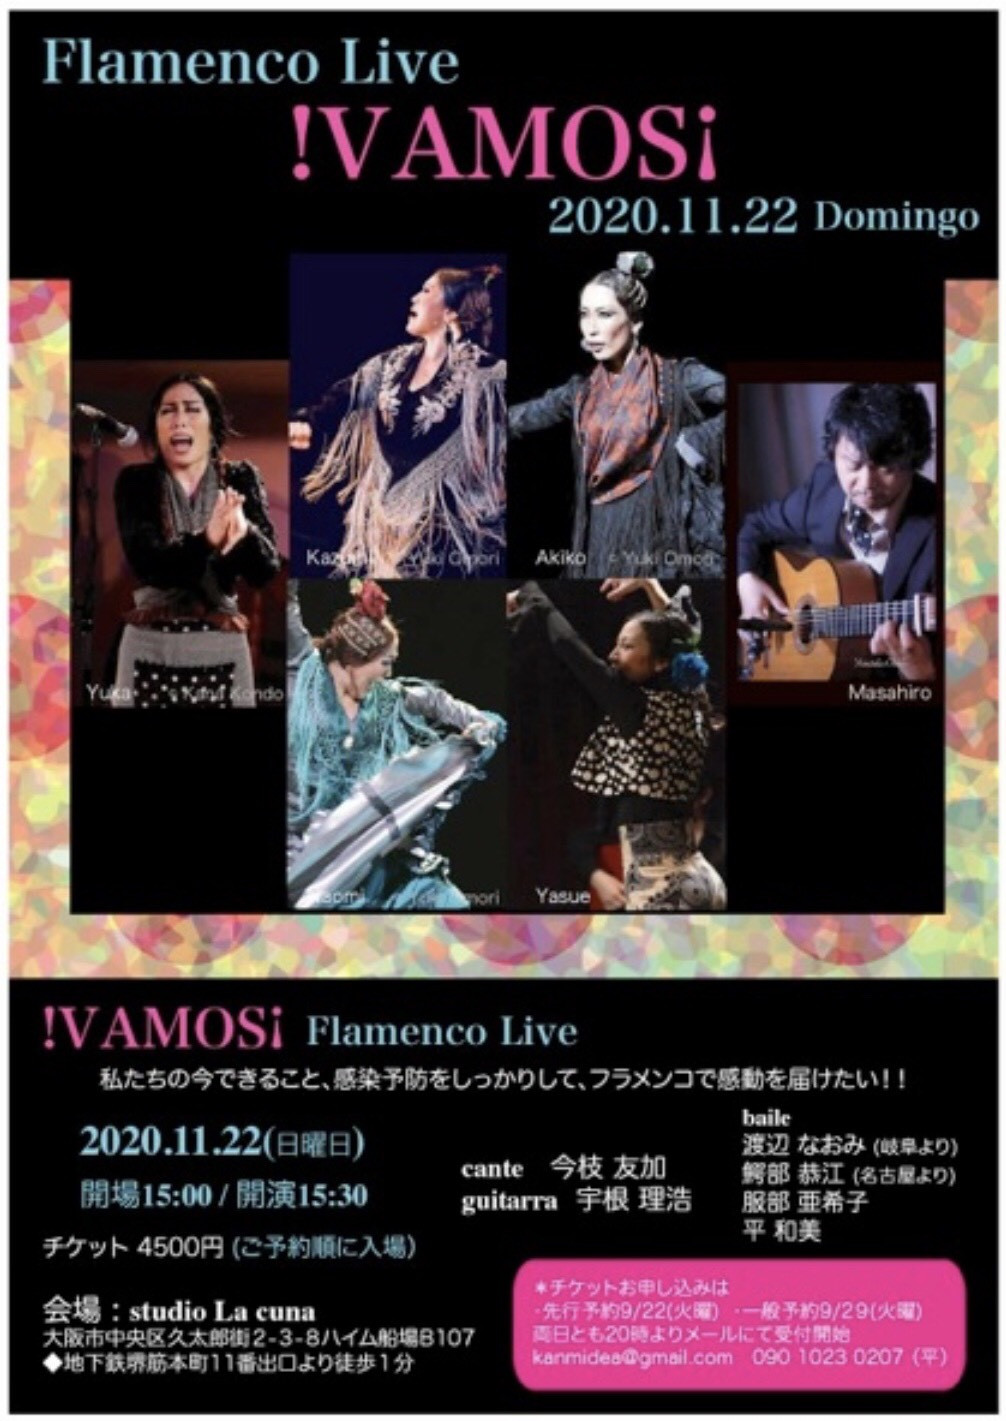 11月22日(日)フラメンコ ライブ 「iVAMOS!」